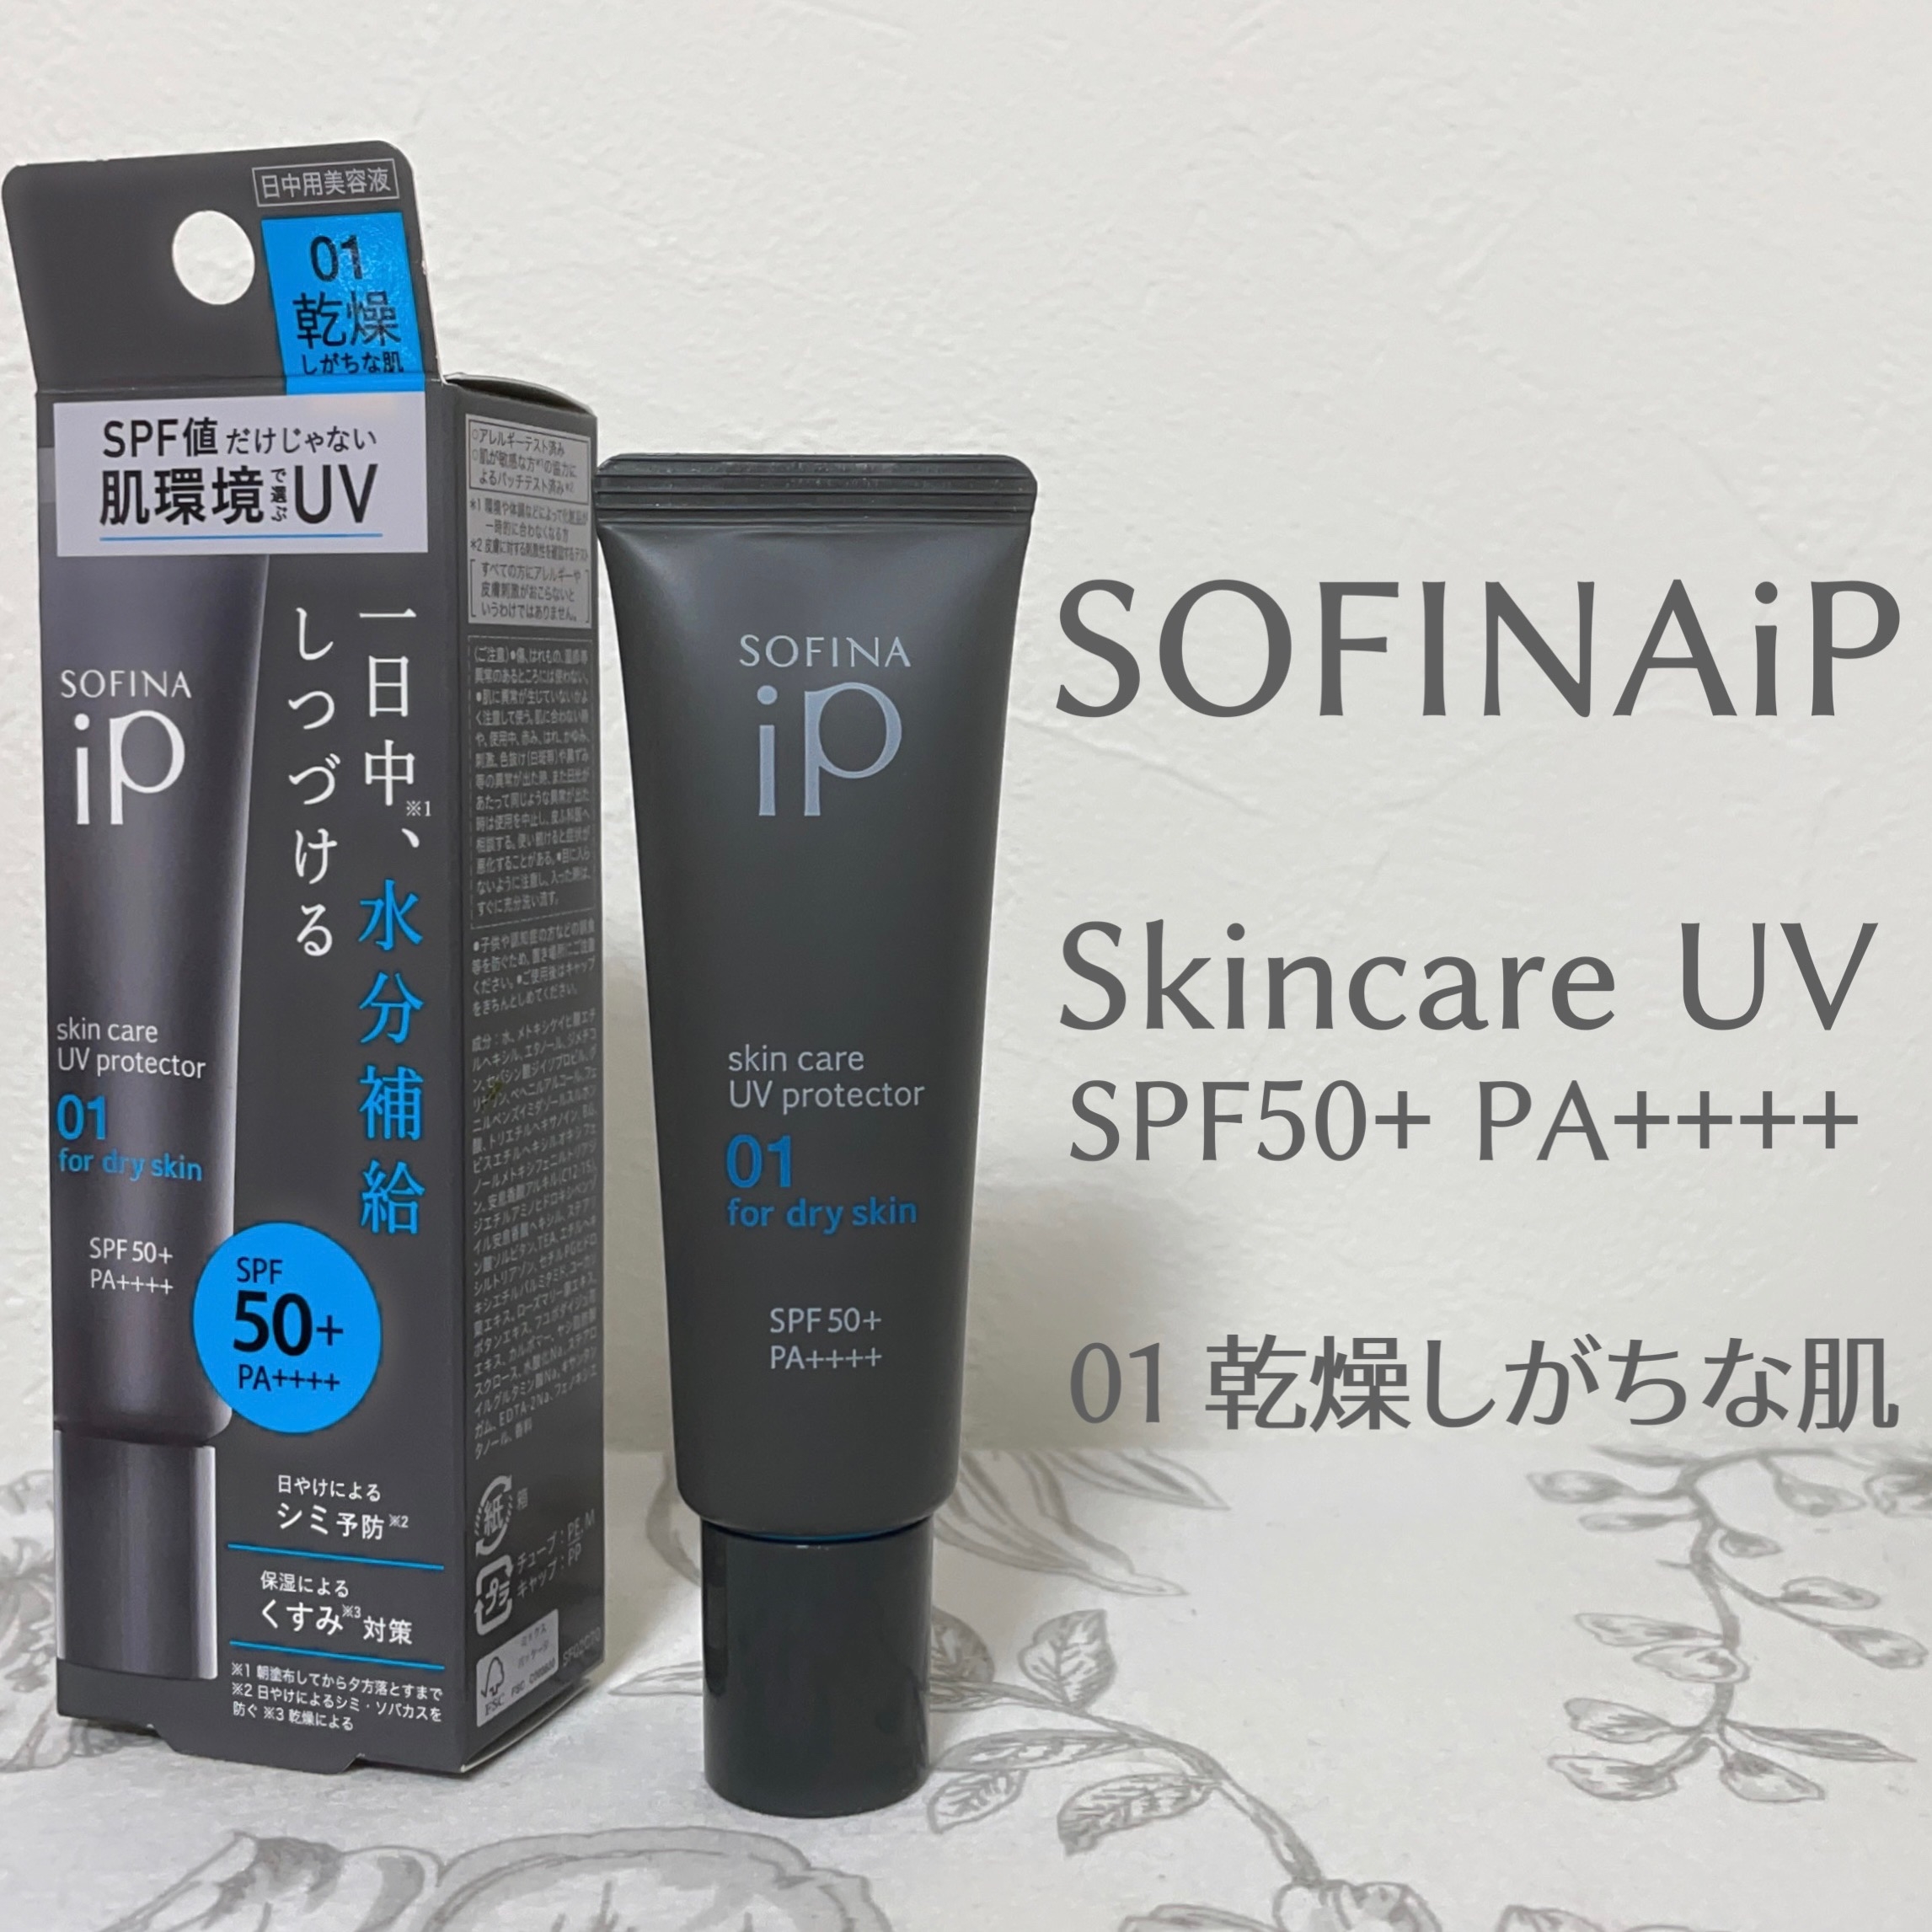 SOFINA iP(ソフィーナ アイピー) スキンケアUV 01乾燥しがちな肌の良い点・メリットに関するもいさんの口コミ画像2